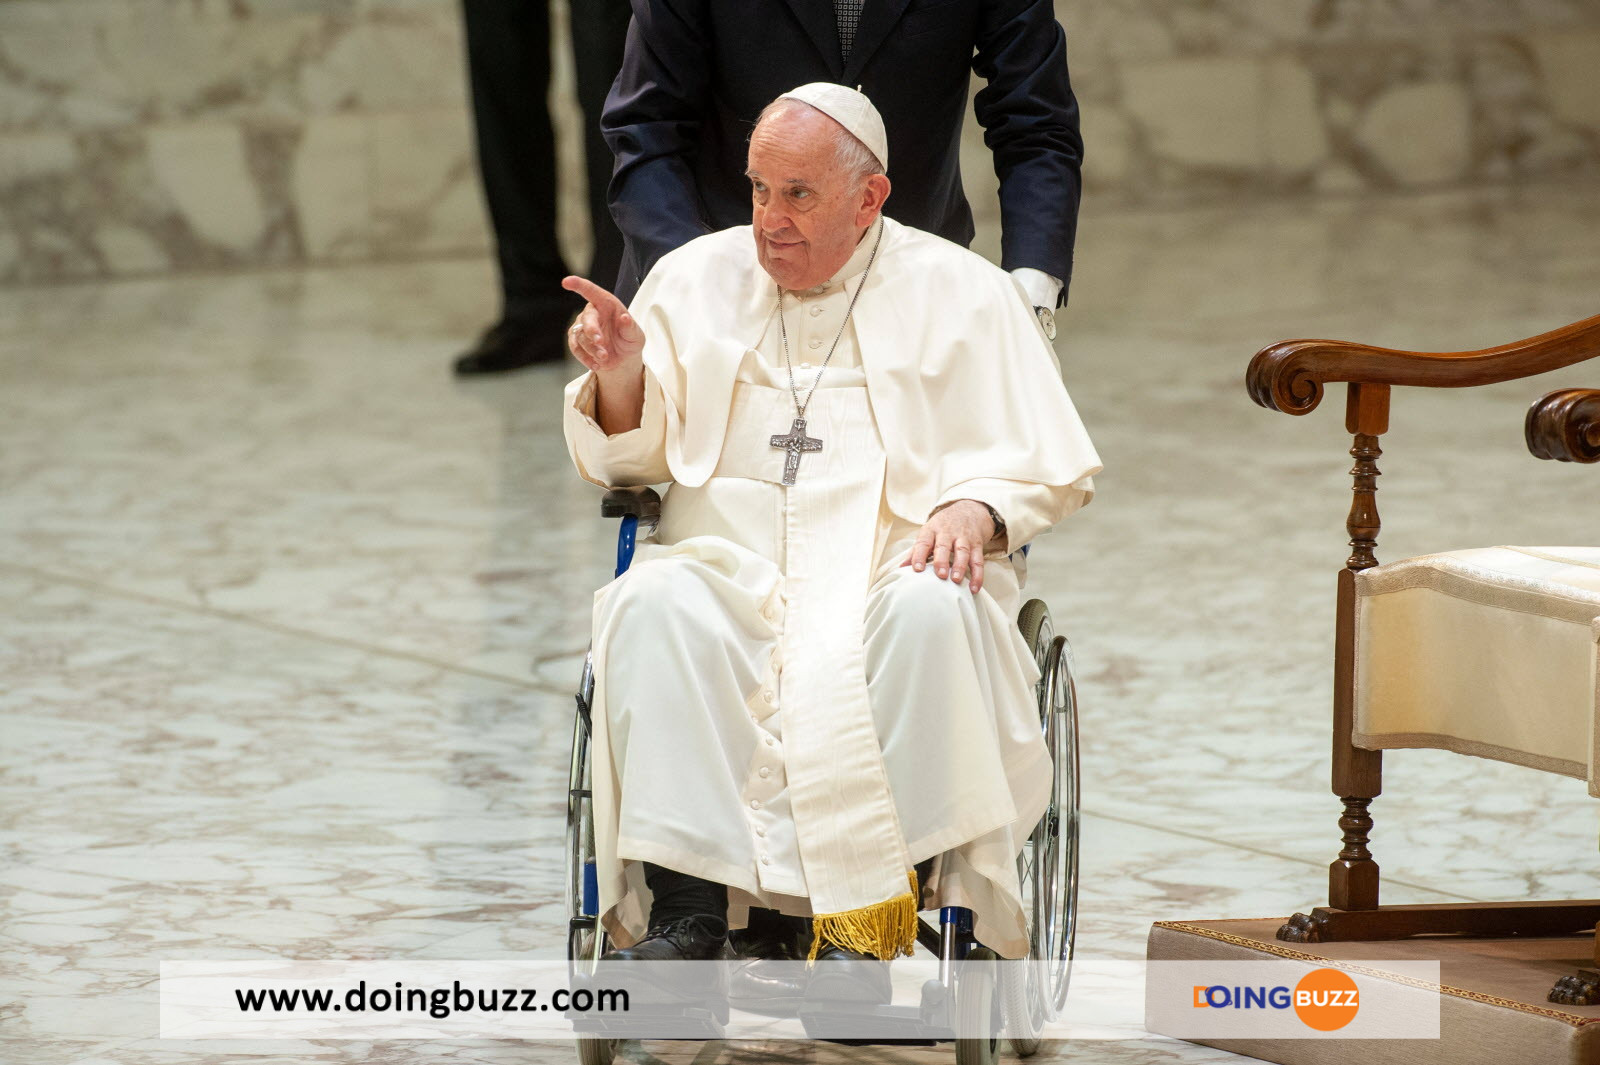 Un « Démon » Se Cache Parmi Le Personnel Du Vatican Selon Le Pape François